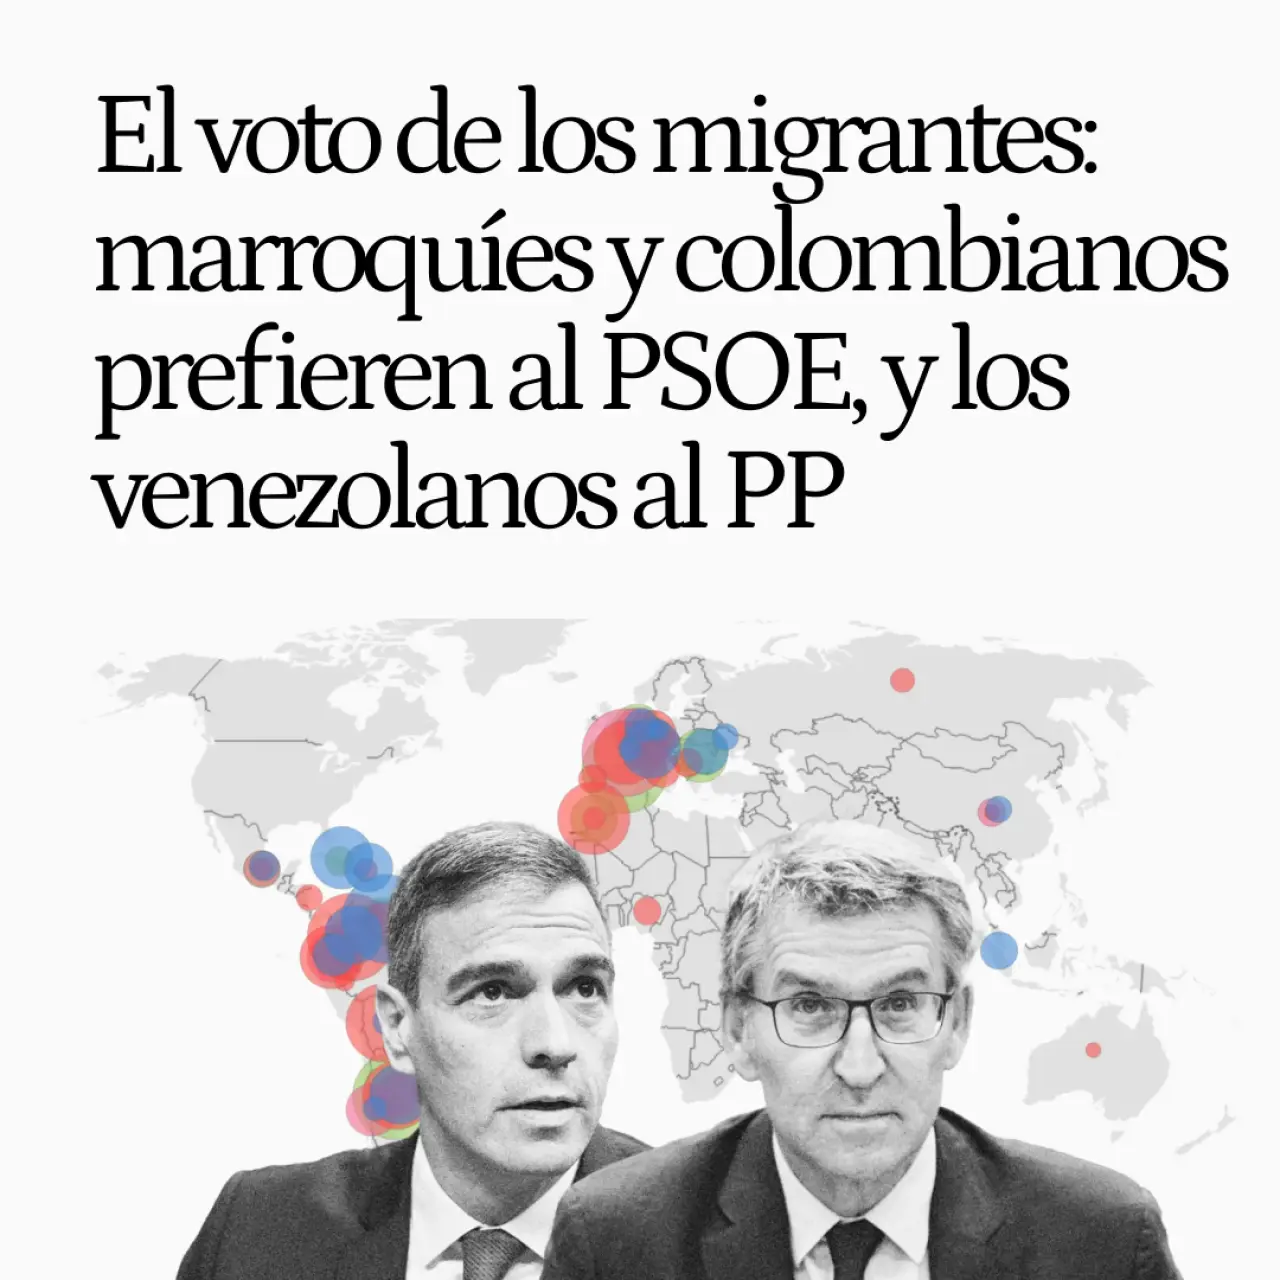 Así se comporta el voto de los migrantes: marroquíes y colombianos prefieren al PSOE, y los venezolanos al PP